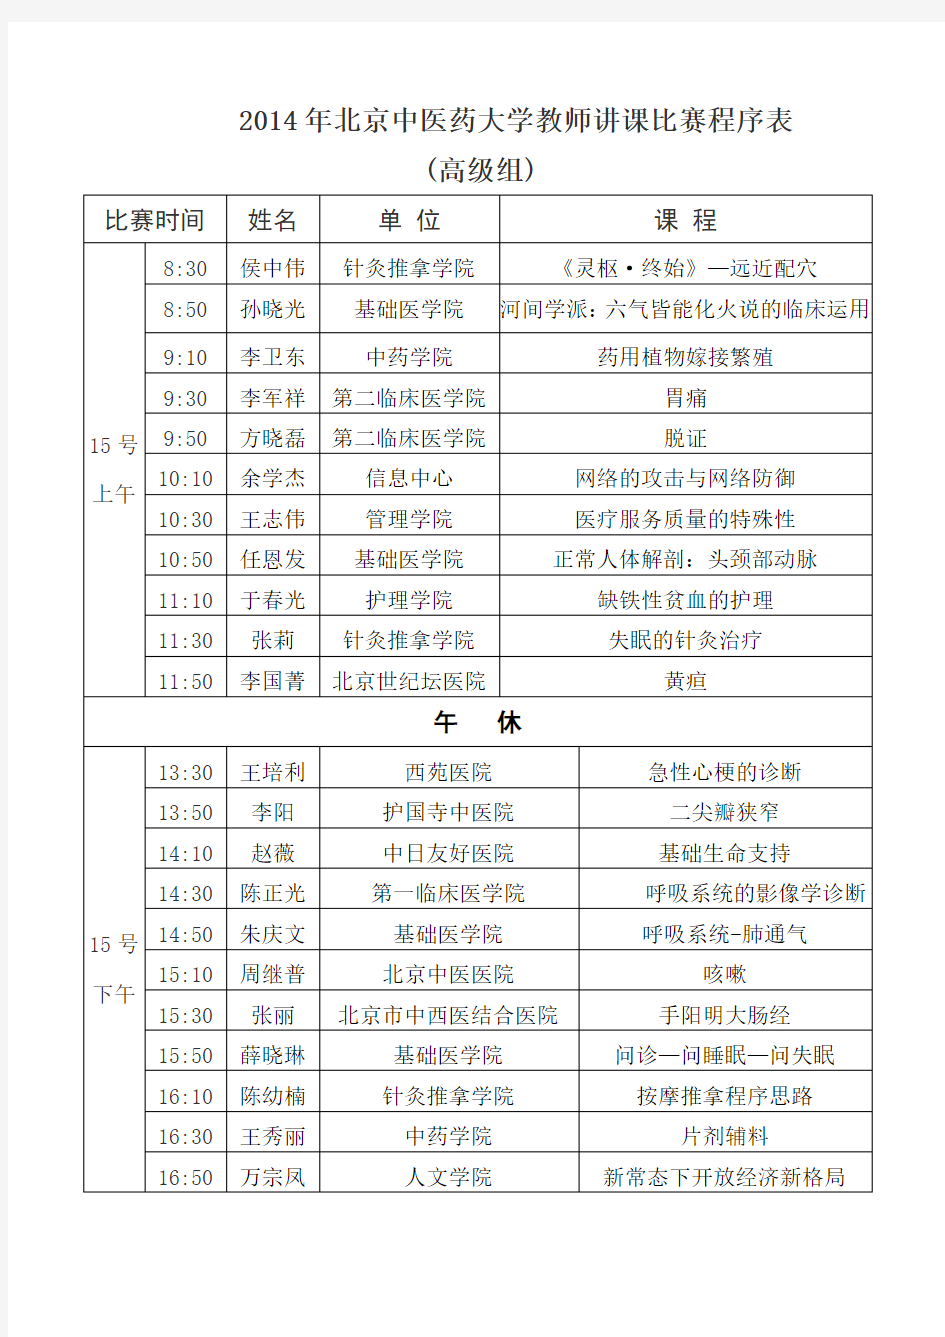 北京中医药大学教师讲课比赛程序表